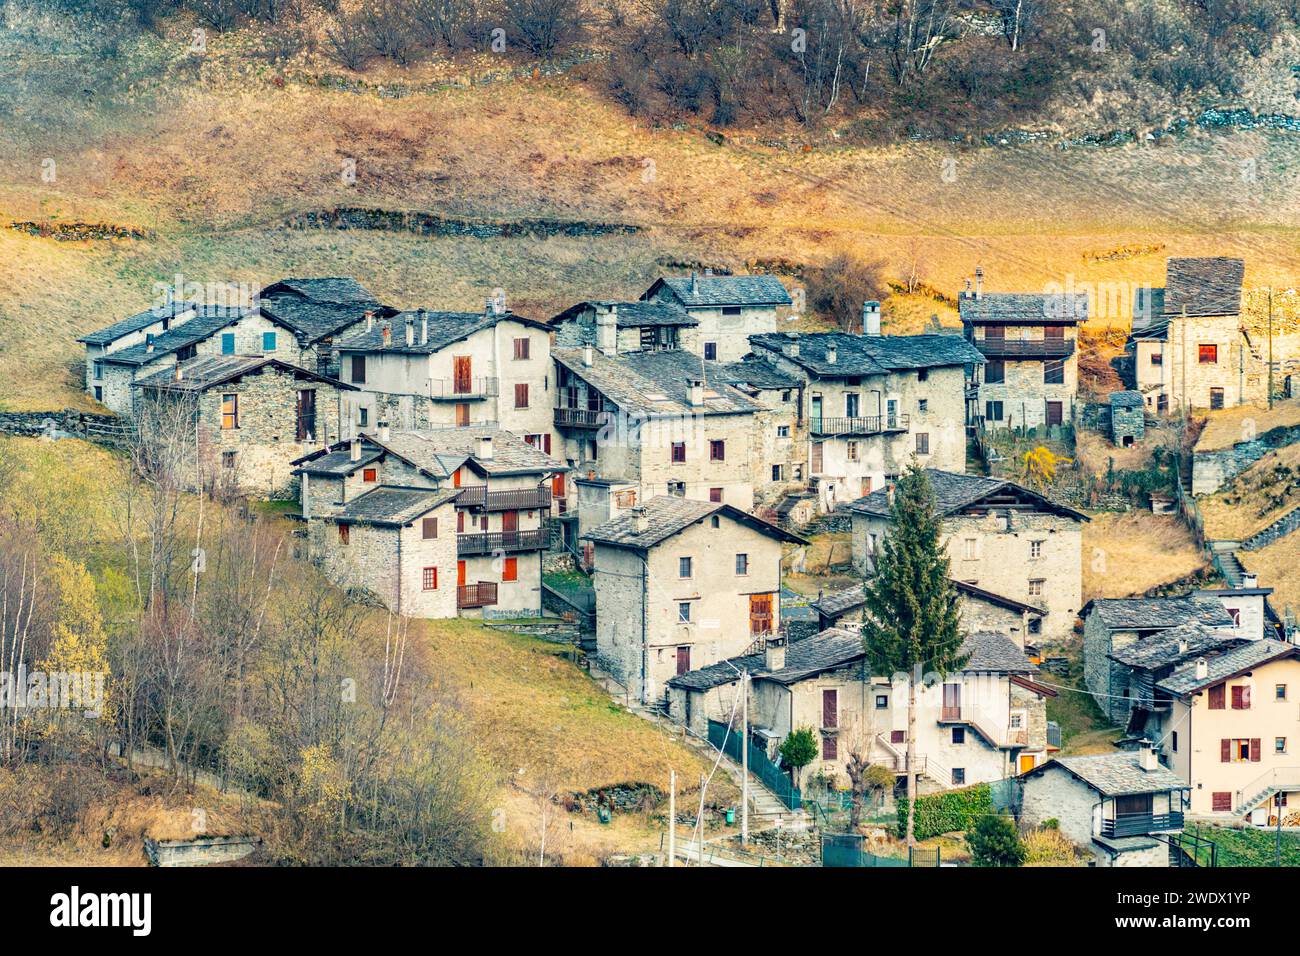 scenic village of Caspoggio in Region Valmalenco, Italy Stock Photo